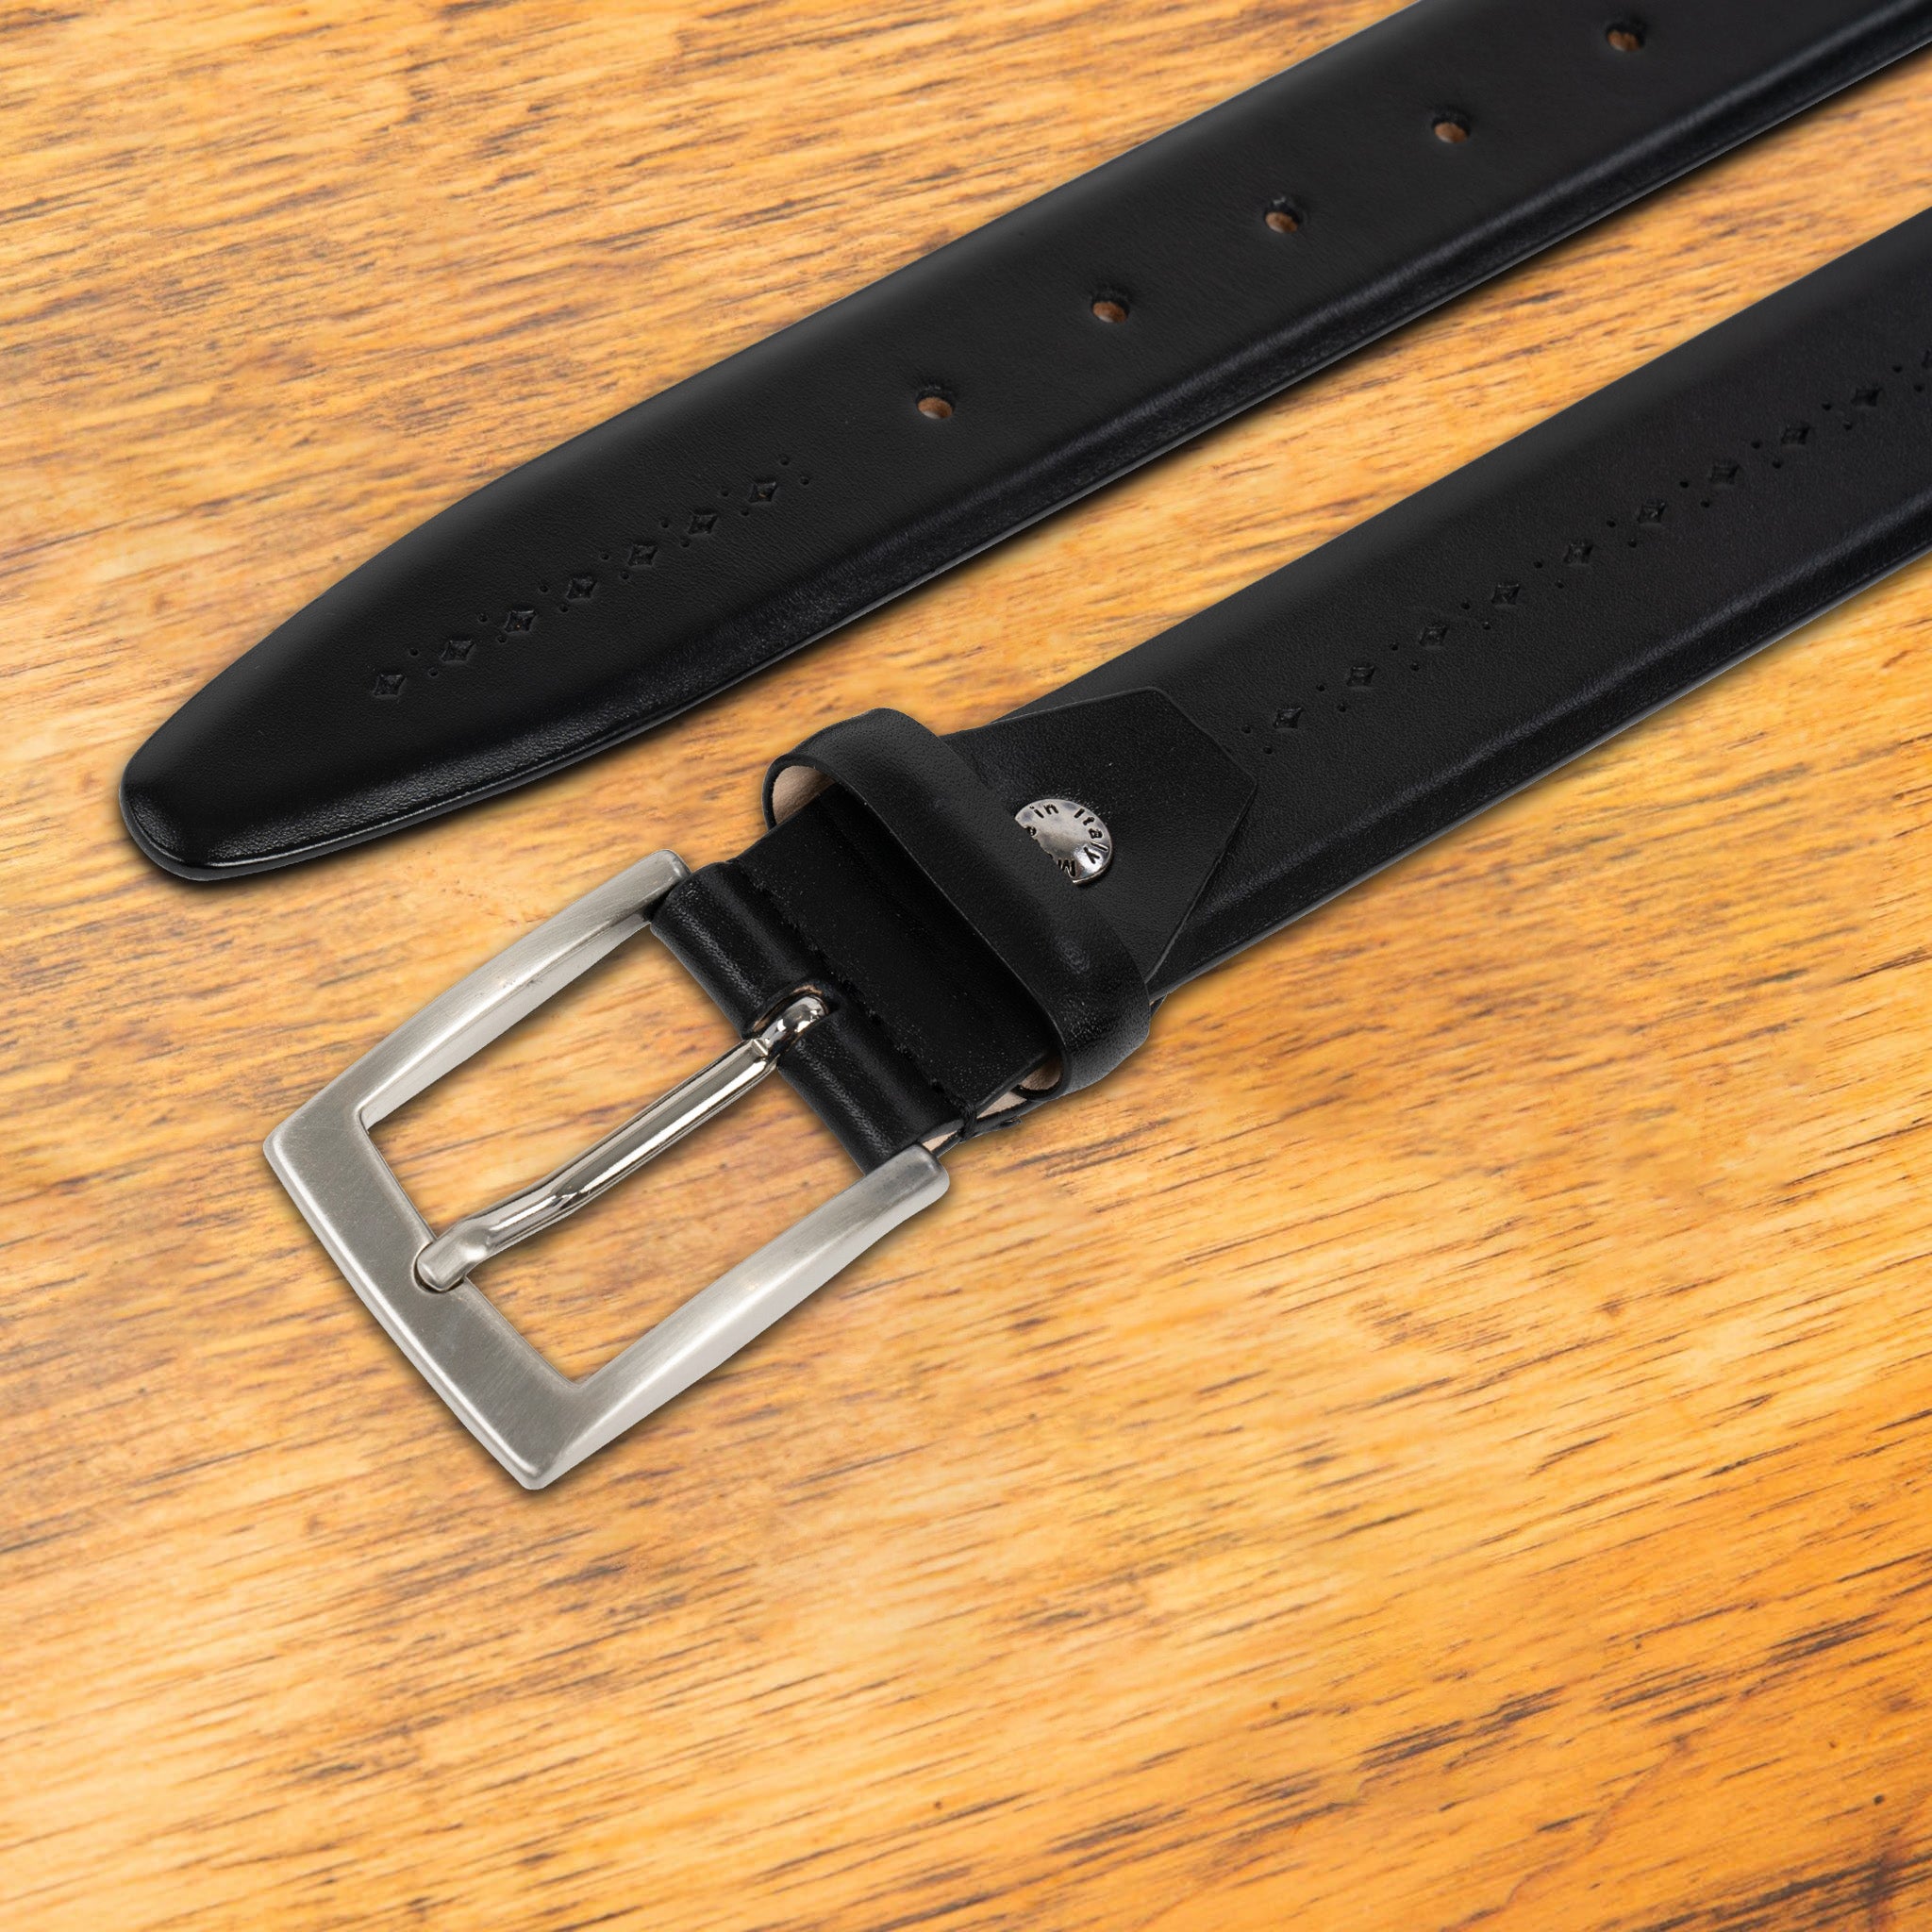 Calzoleria Toscana C1499 Saffiano Leather Belt